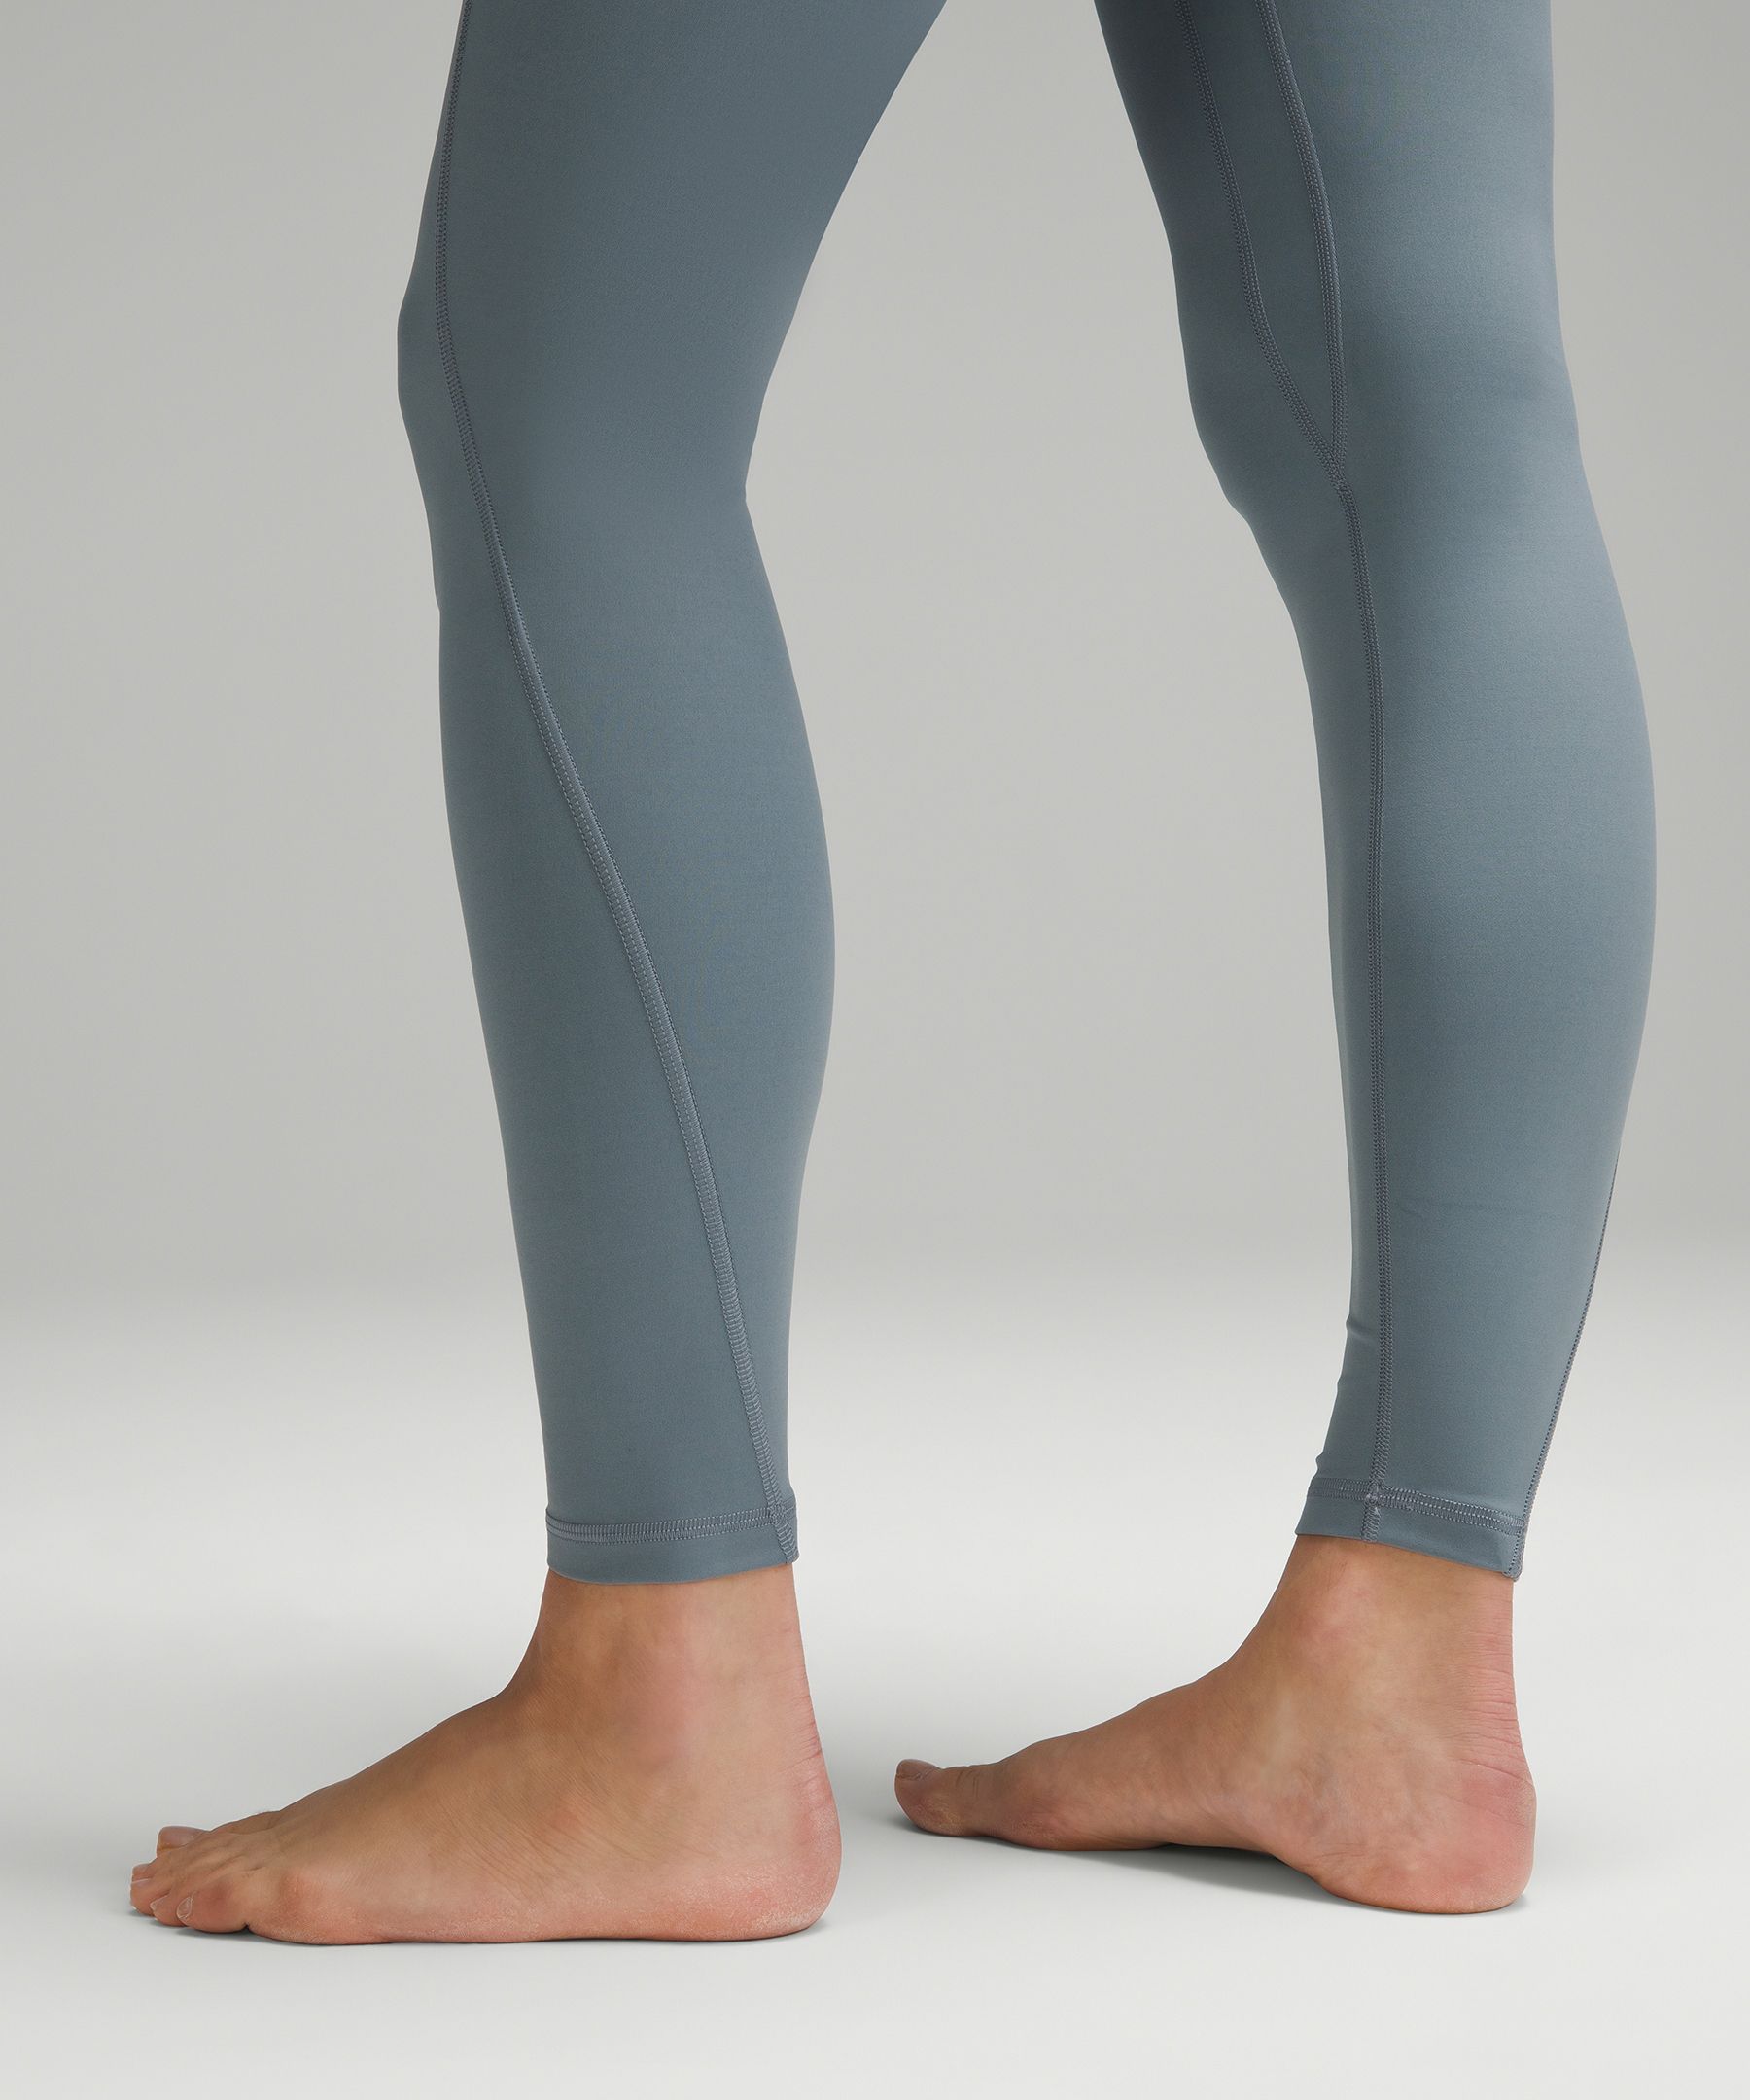 lululemon Align™ High-Rise Pant 28 *Shine | Women's Leggings/Tights